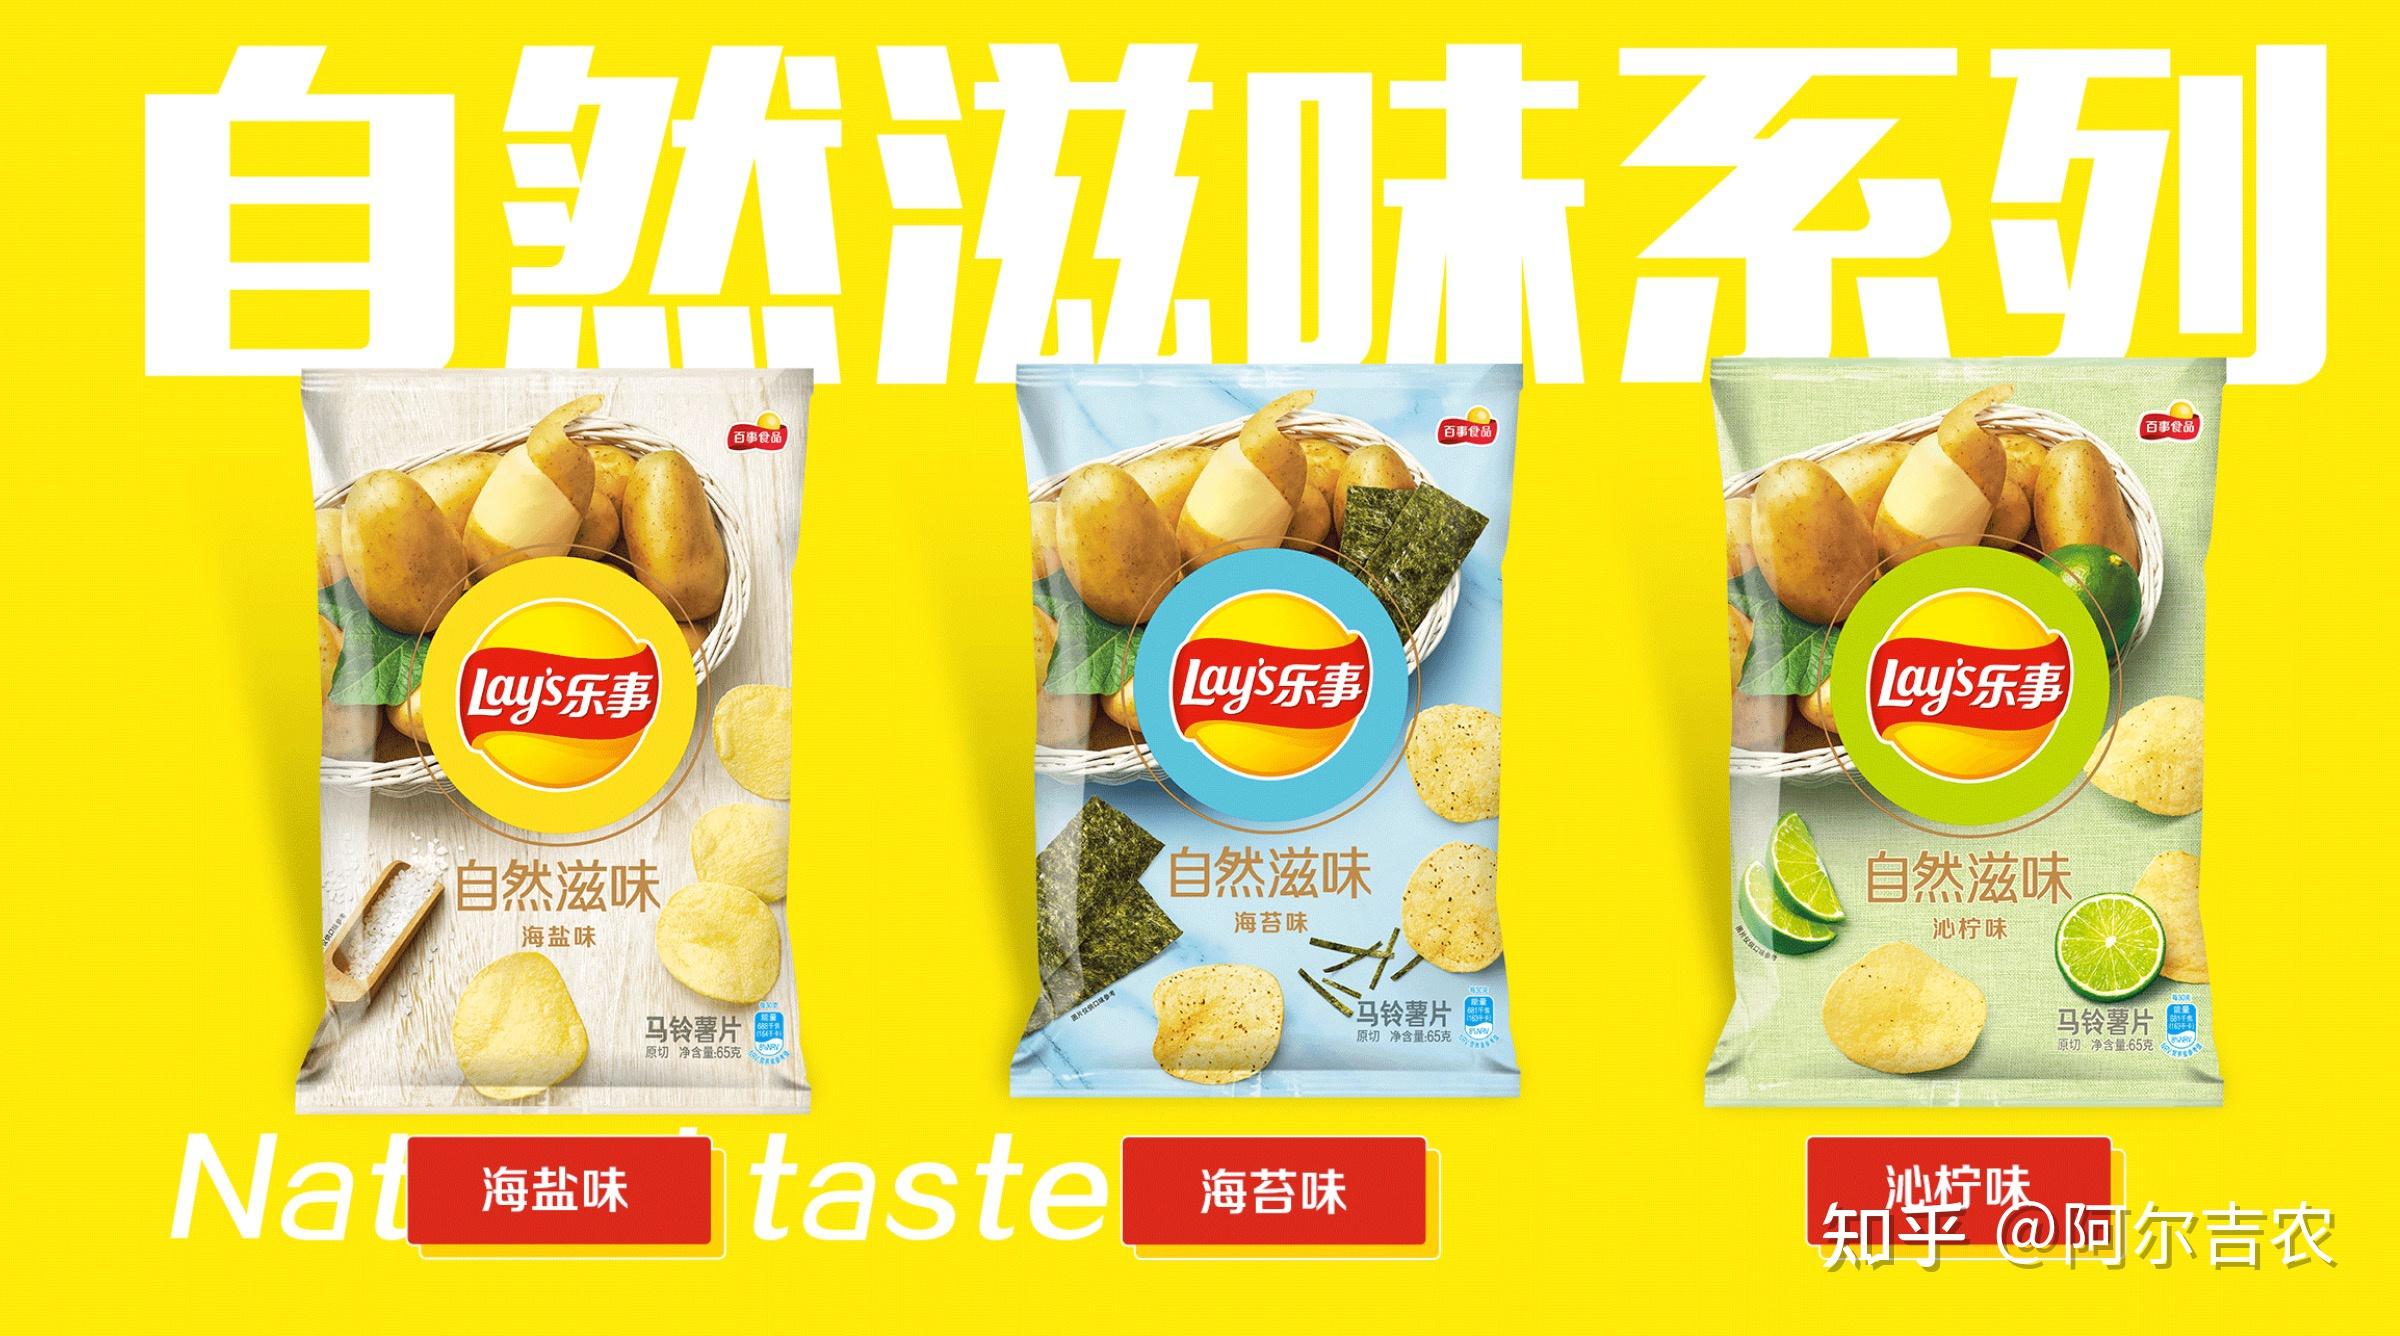 [樂事撚]邊隻馬鈴薯片正？ - 飲食台 - 香港高登討論區